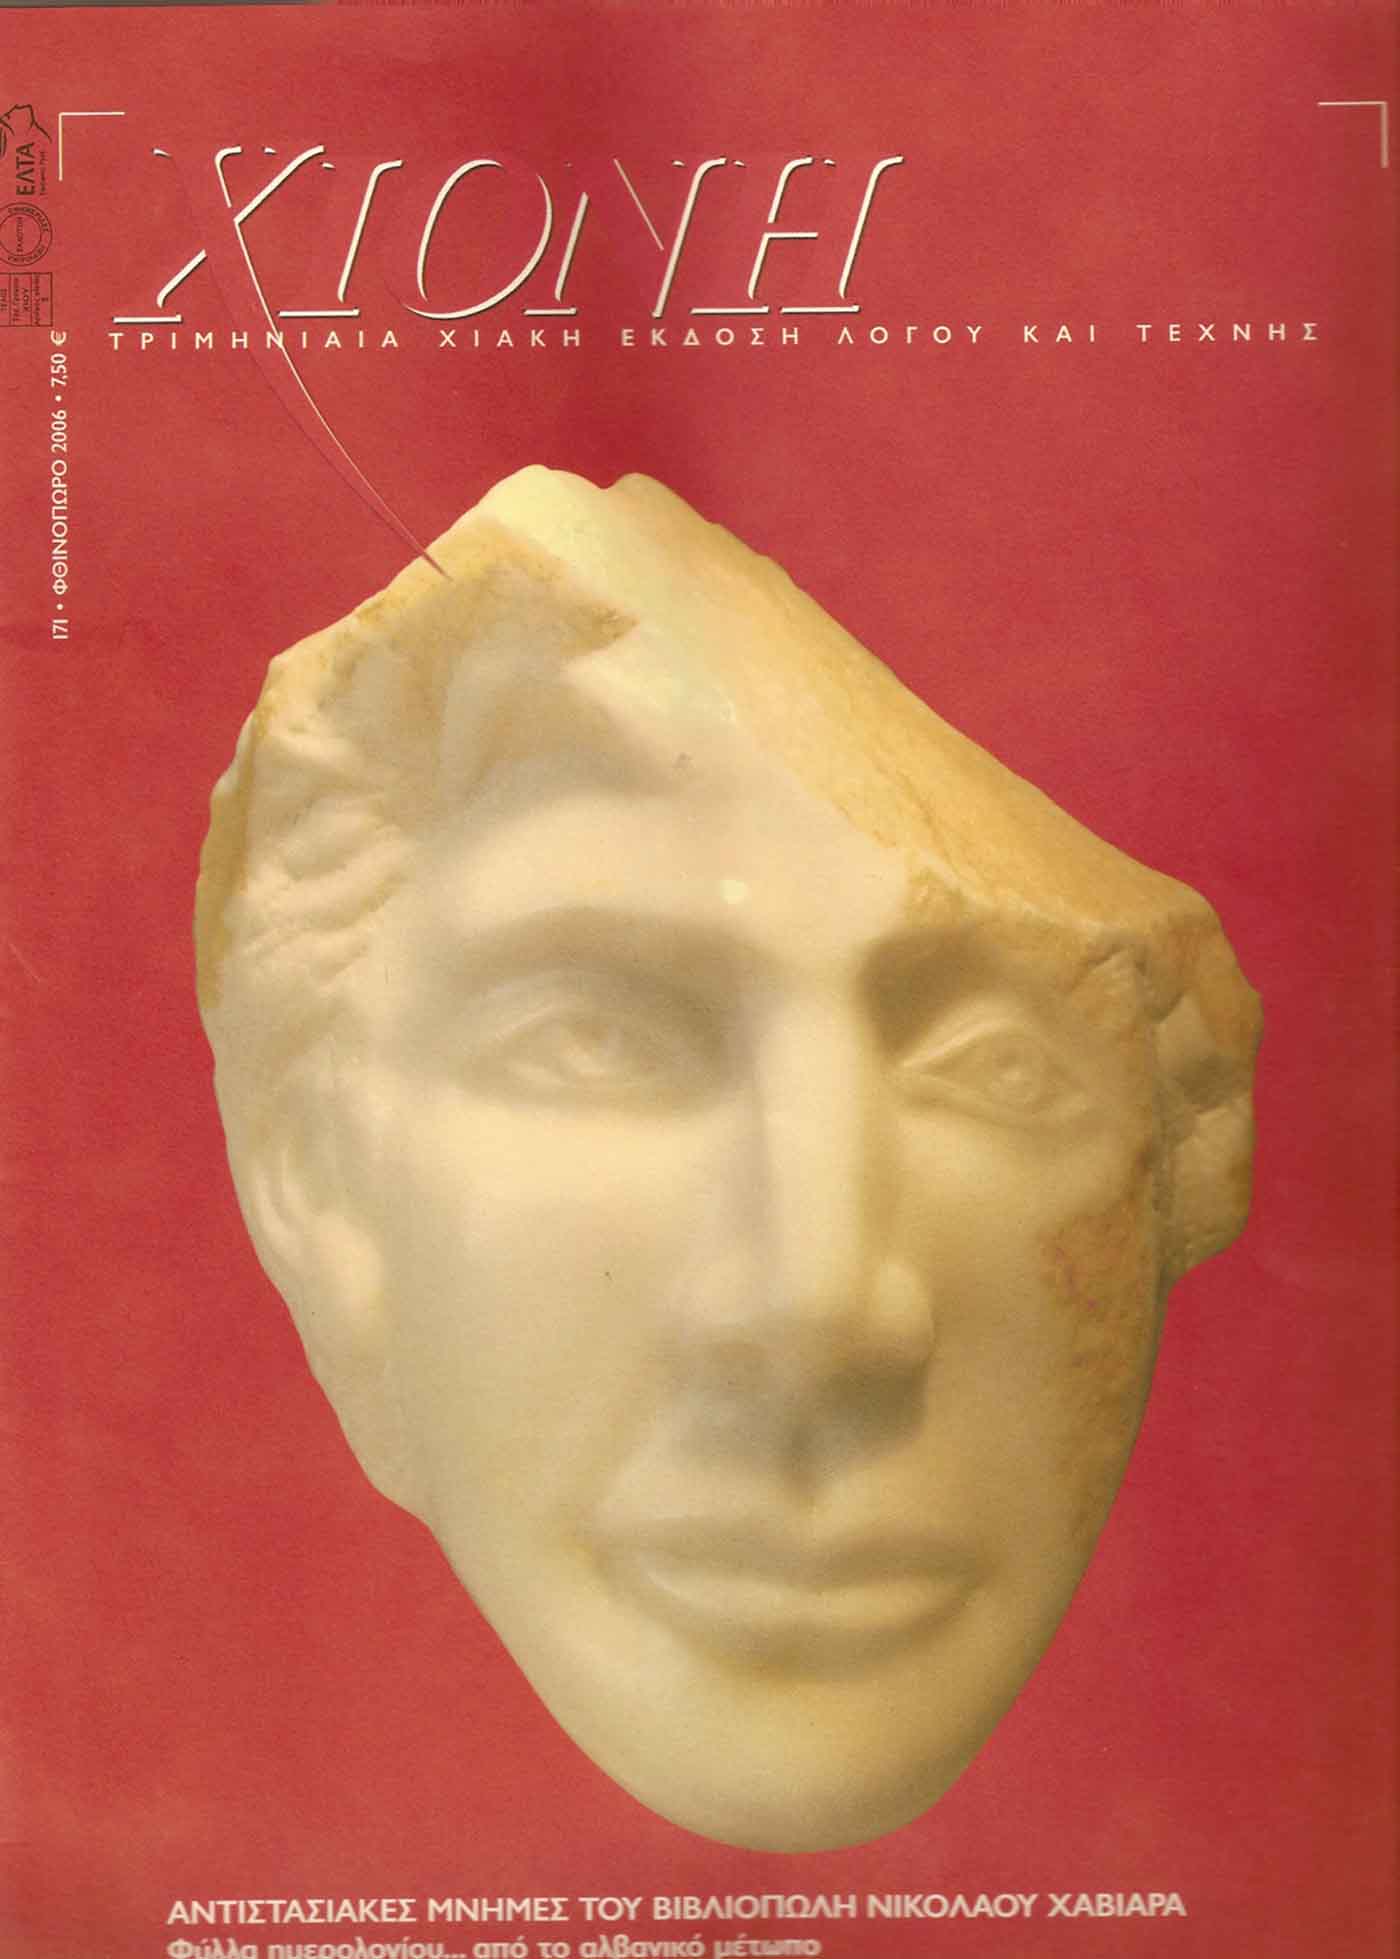 Περιοδικό 'Χιόνη' με γλυπτό του Α. Βαρριά στο εξώφυλλο